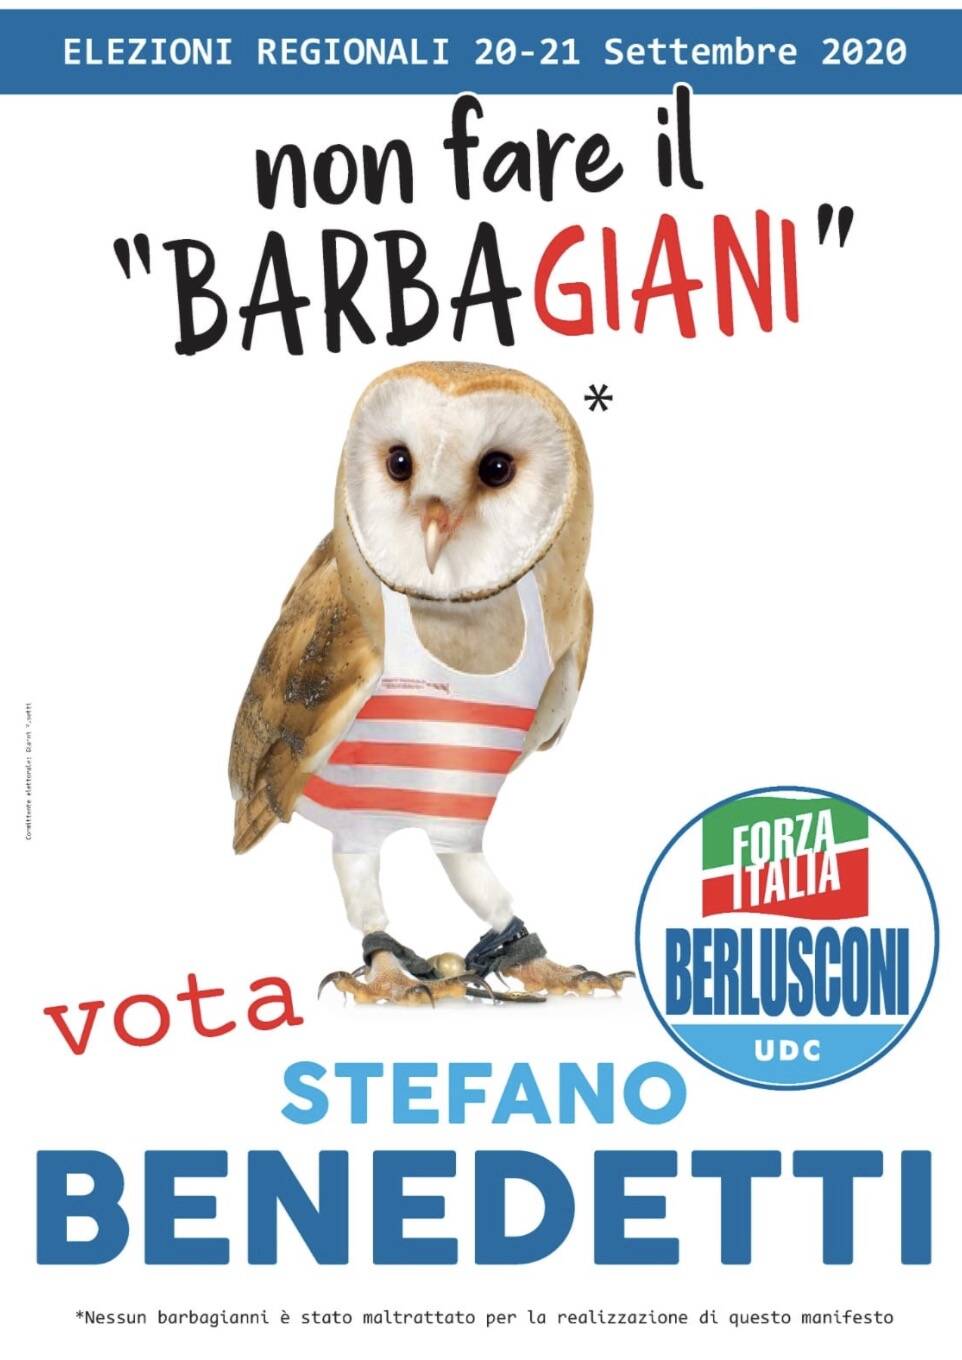 Il manifesto di Stefano Benedetti per le elezioni regionali